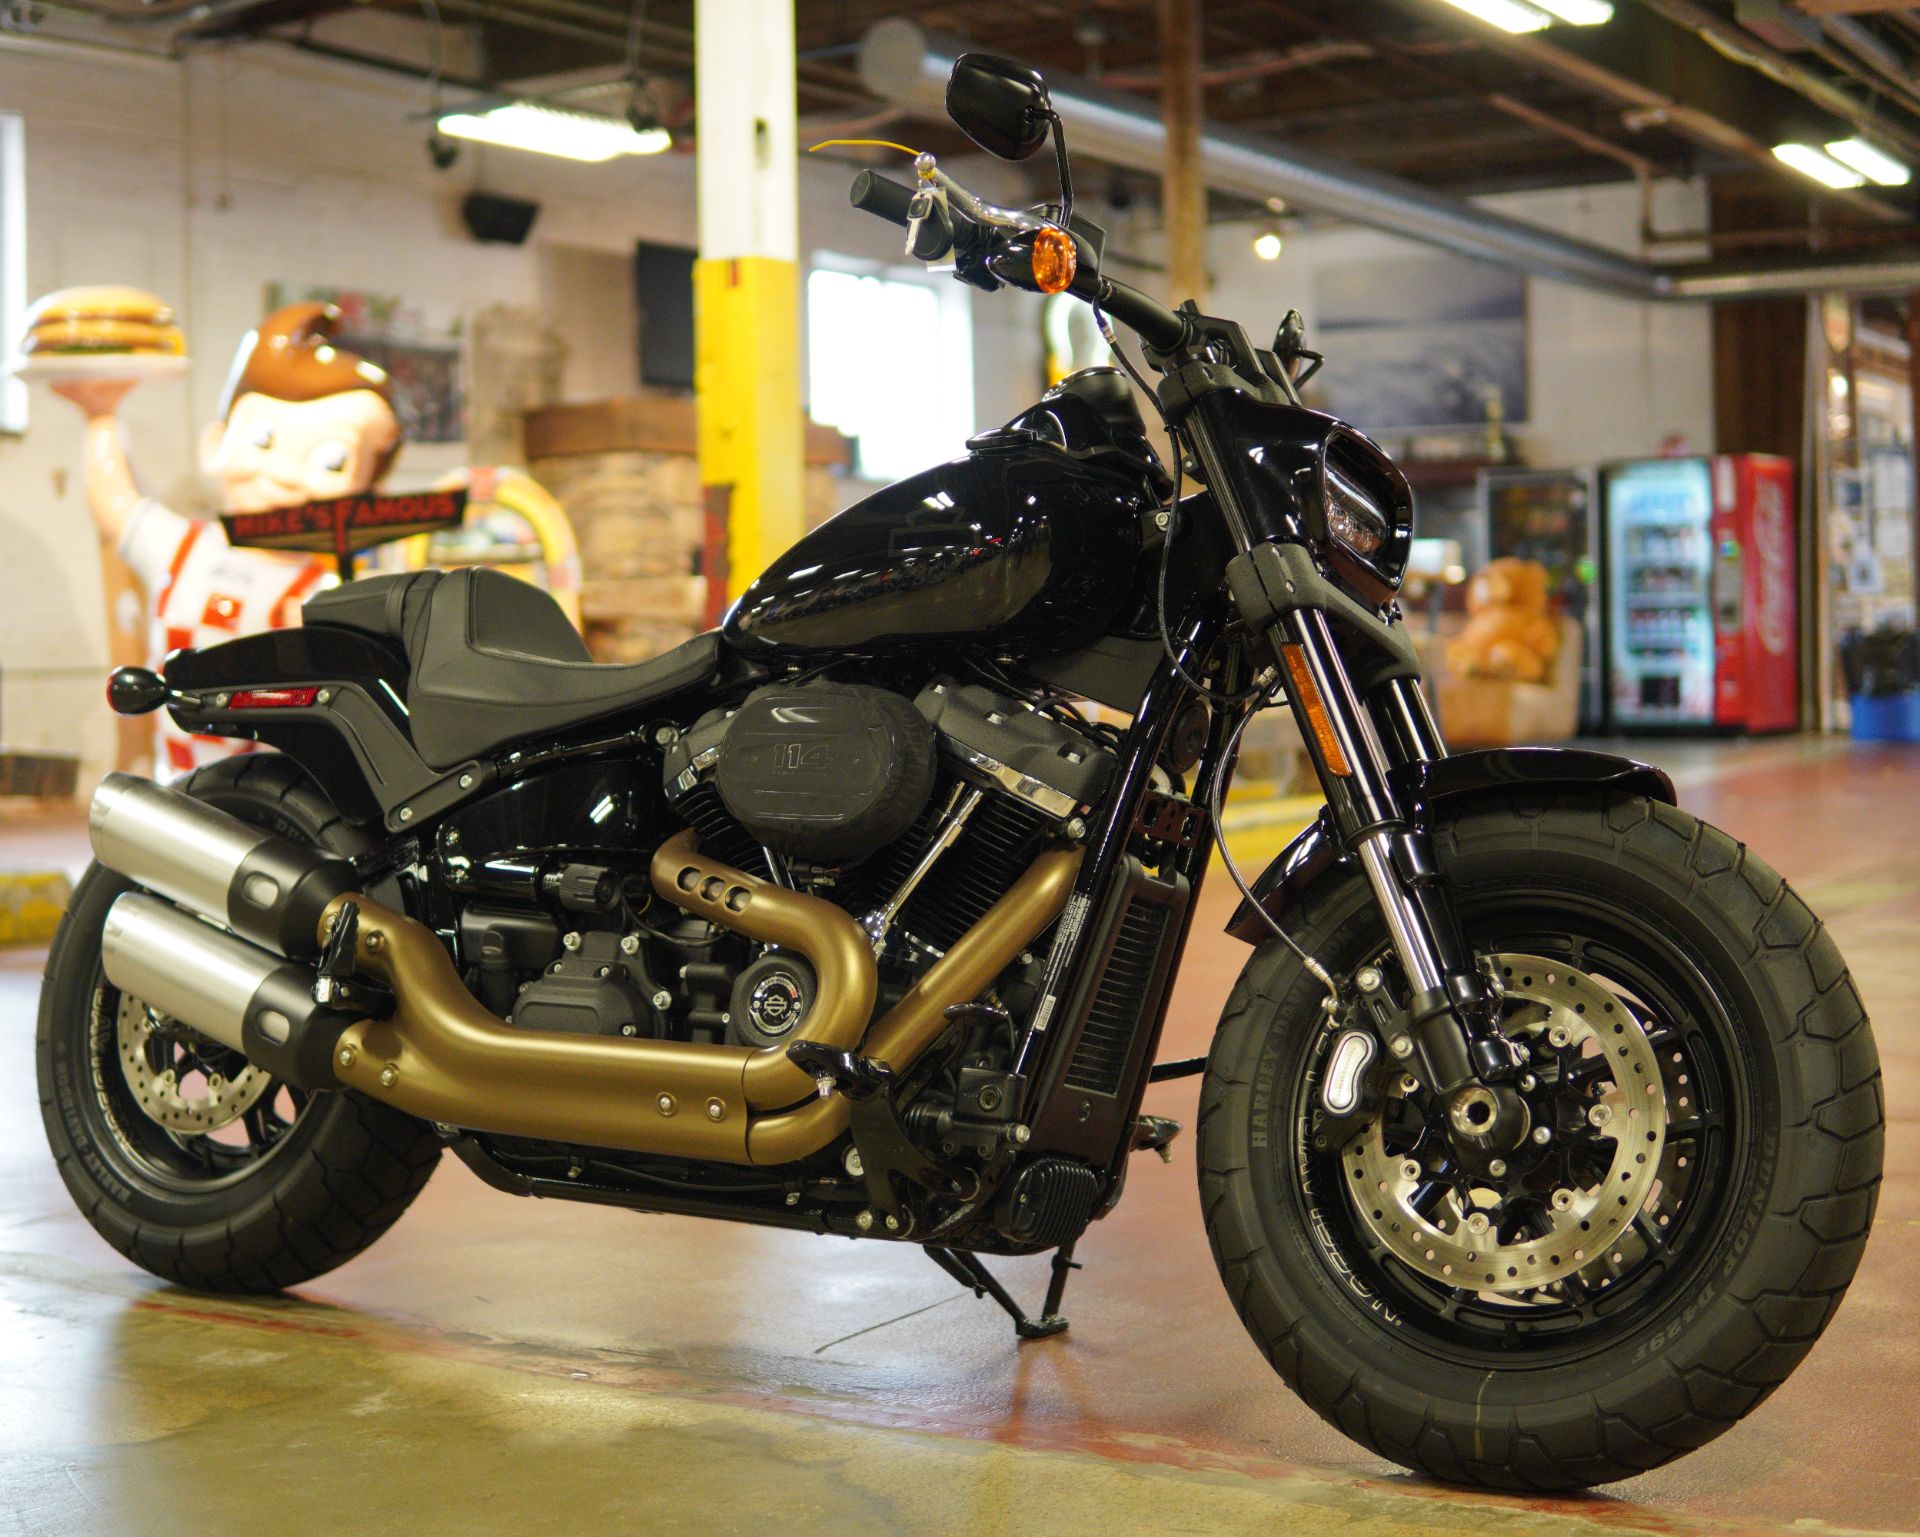 2020 Harley-Davidson Fat Bob® 114 in New London, Connecticut - Photo 2